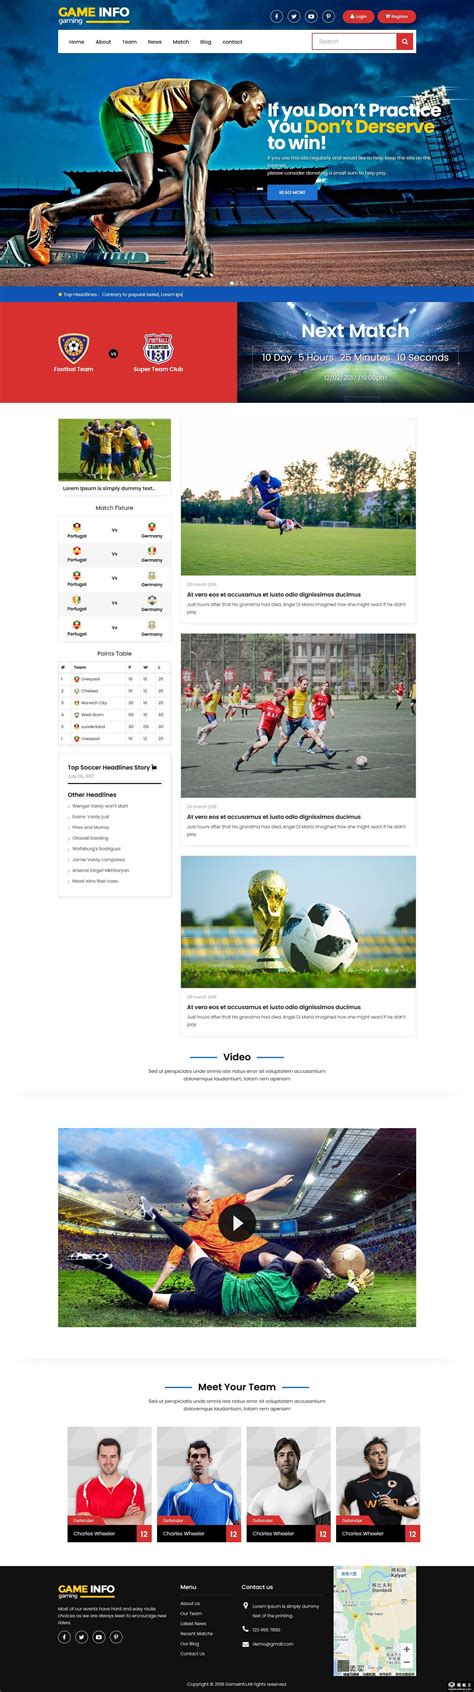 足球运动员的数据分析实战(python)_足球运动员技术分析怎么写-CSDN博客